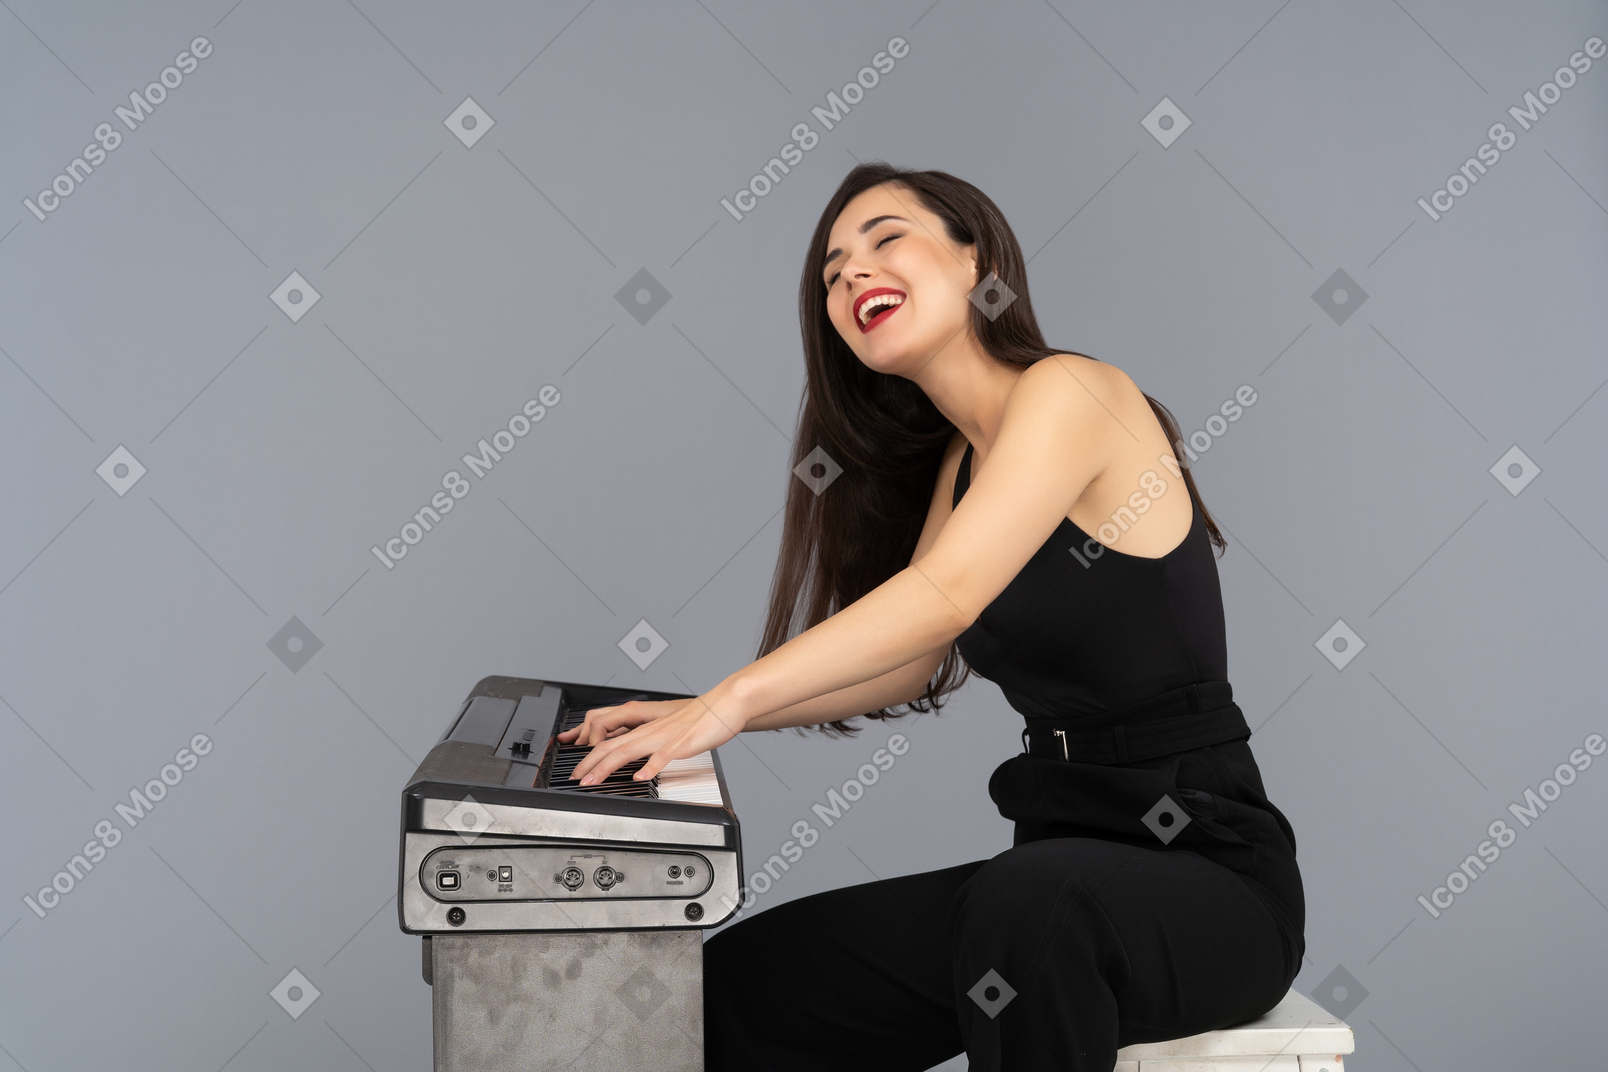 피아노를 치는 동안 크게 웃는 명랑한 여자